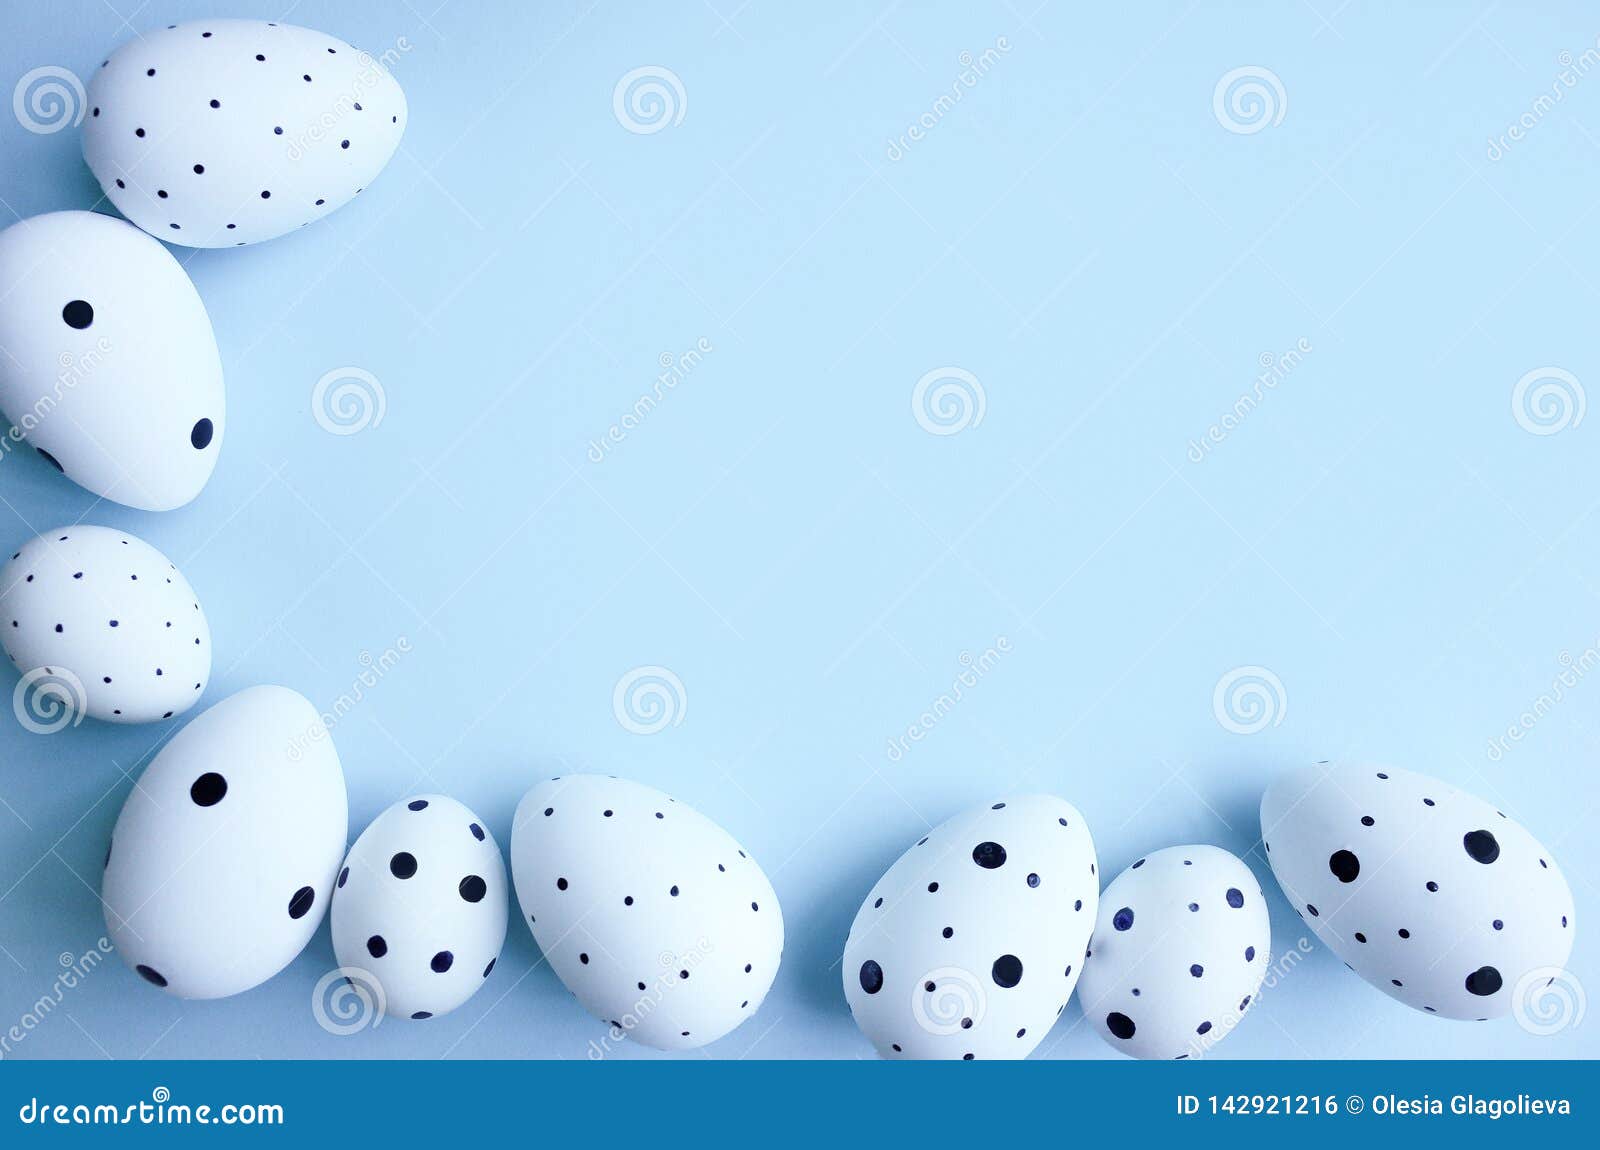 Màu xanh ngọc bích của nền bức tranh tôn lên vẻ đẹp của những quả trứng Phục Sinh được phủ bởi những họa tiết hoa lá trang trí tinh tế. Để thấy được sự hài hoà tuyệt đẹp giữa màu sắc và họa tiết này, hãy nhấp chuột để xem bức hình liên quan.